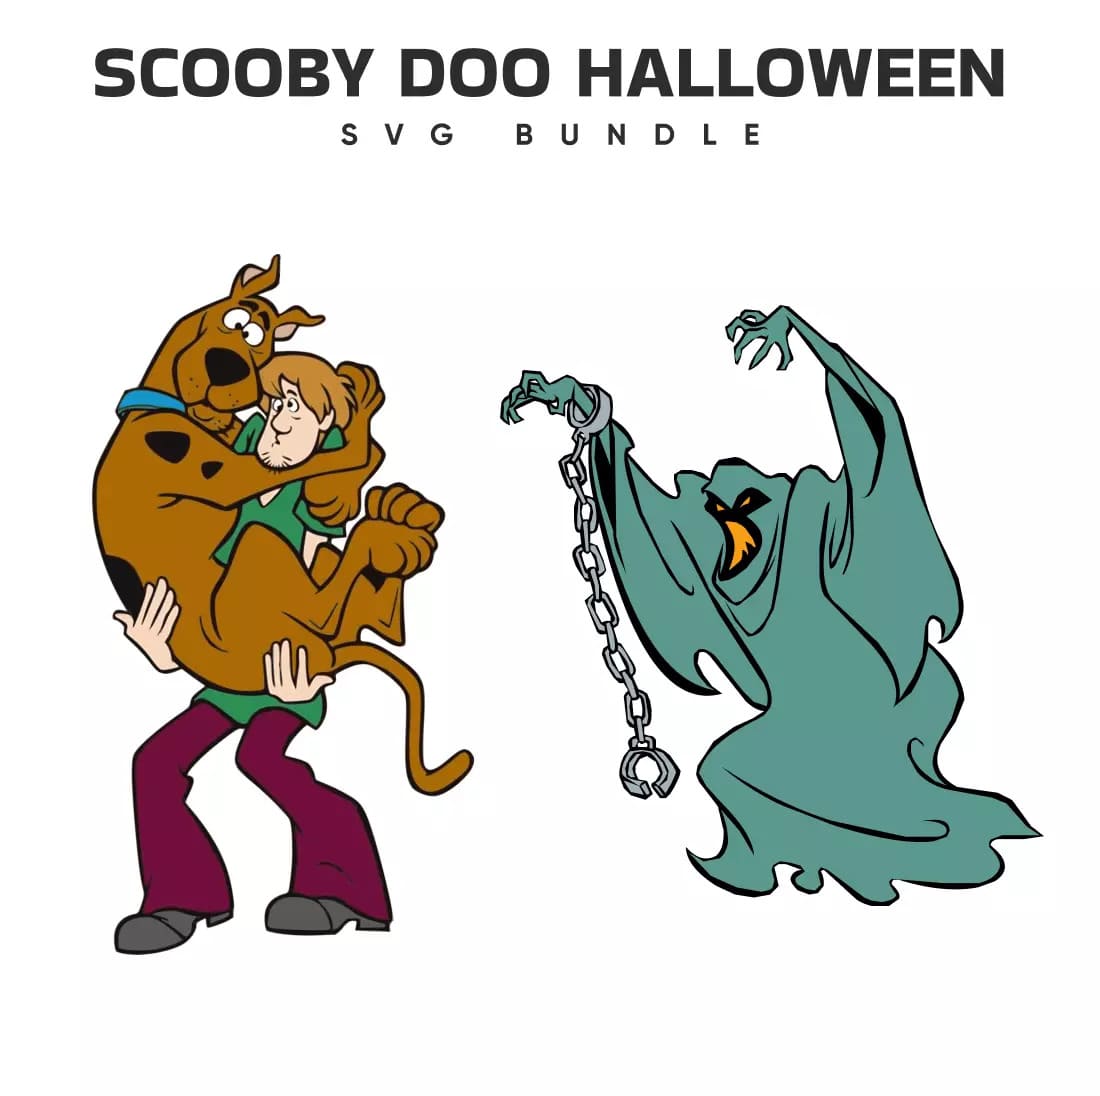 Scooby Doo Halloween SVG Bundle Preview.